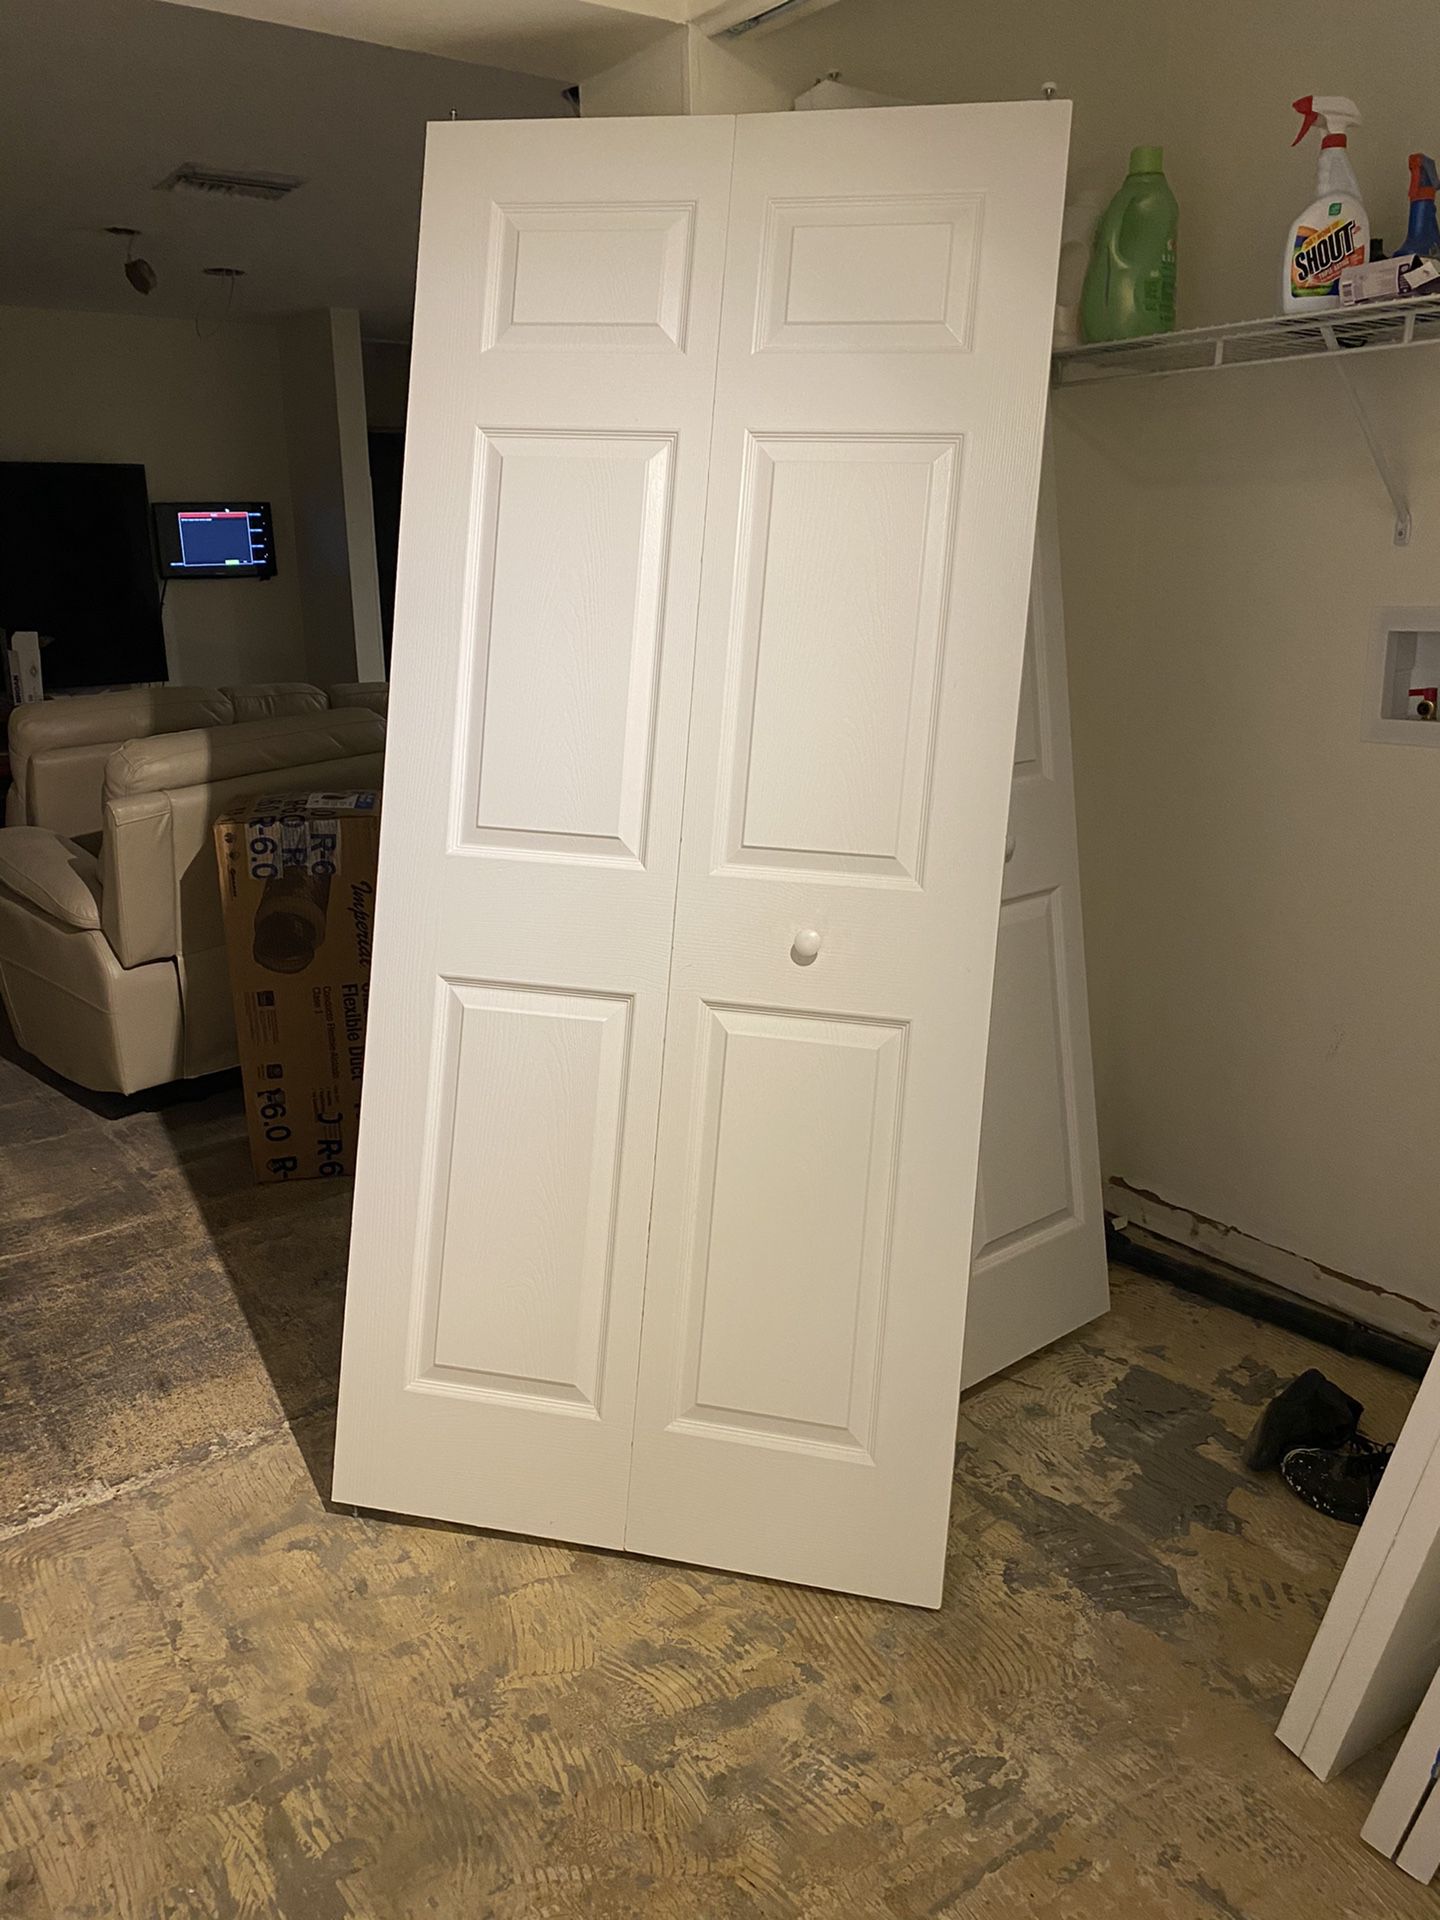 bi-fold doors